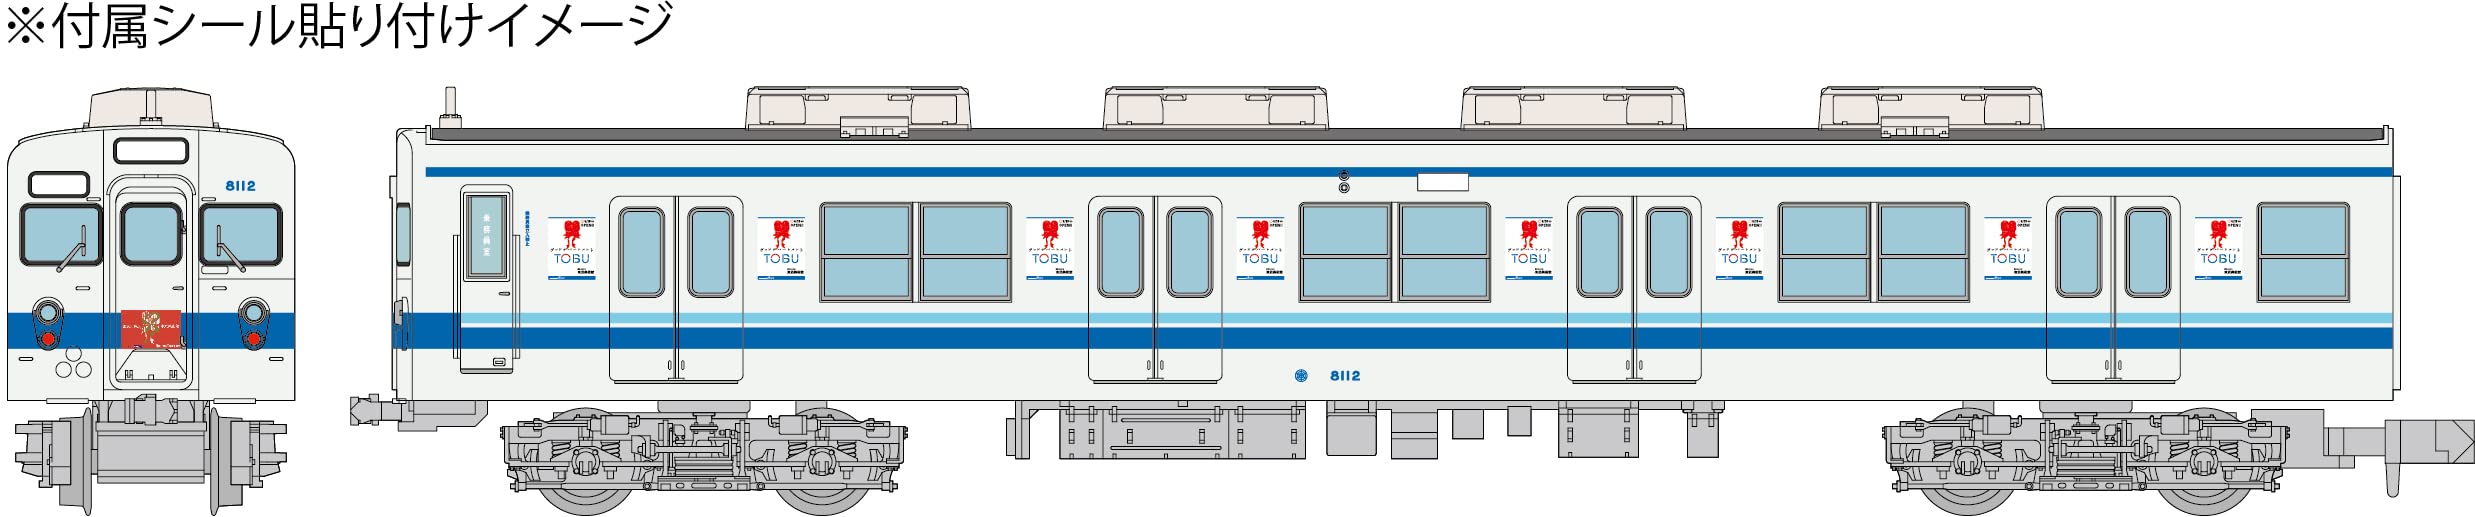 Tomytec Japan Railway Collection Tobu 8000 8112 Gute Abteilung Anzeige Zug 6 Wagen Set Diorama Zubehör 324683